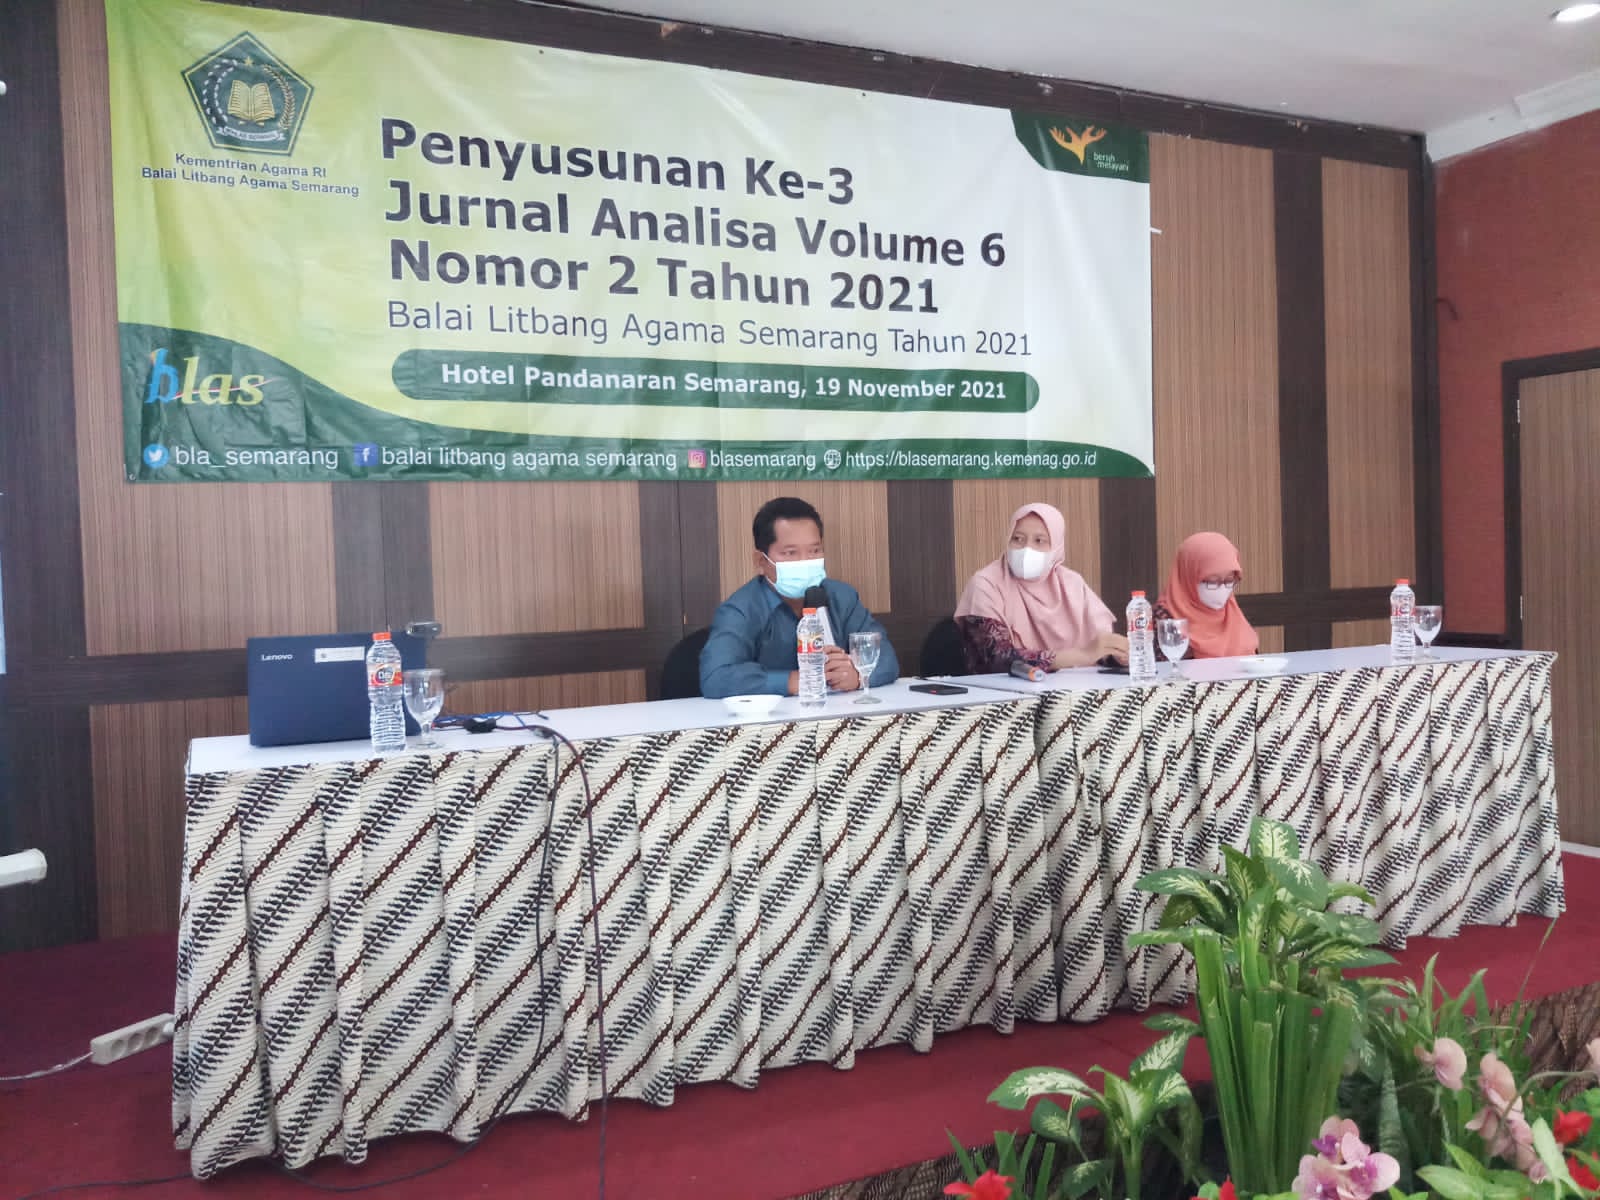 Penyusunan Ke-3 Jurnal Analisa Vol. 6 No. 2 Th. 2021 Balai Litbang Agama Semarang Tahun 2021